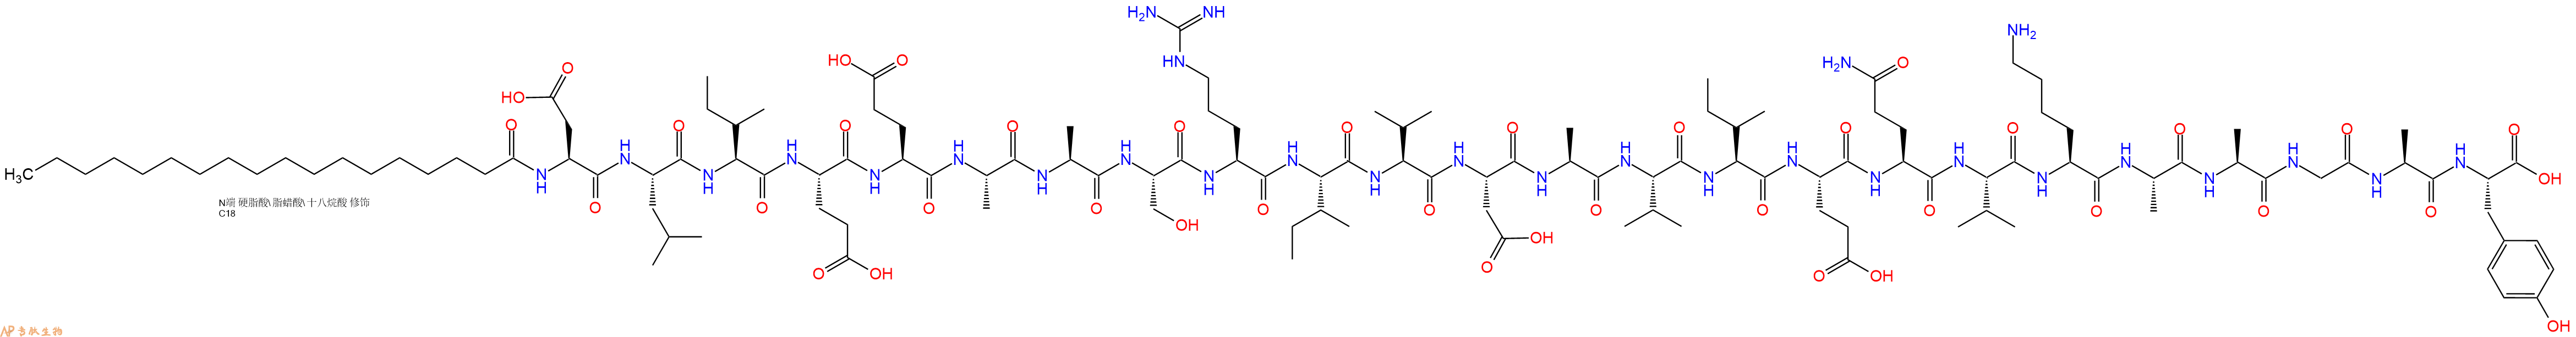 专肽生物产品Ht-31硬脂酸多肽、st-Ht31